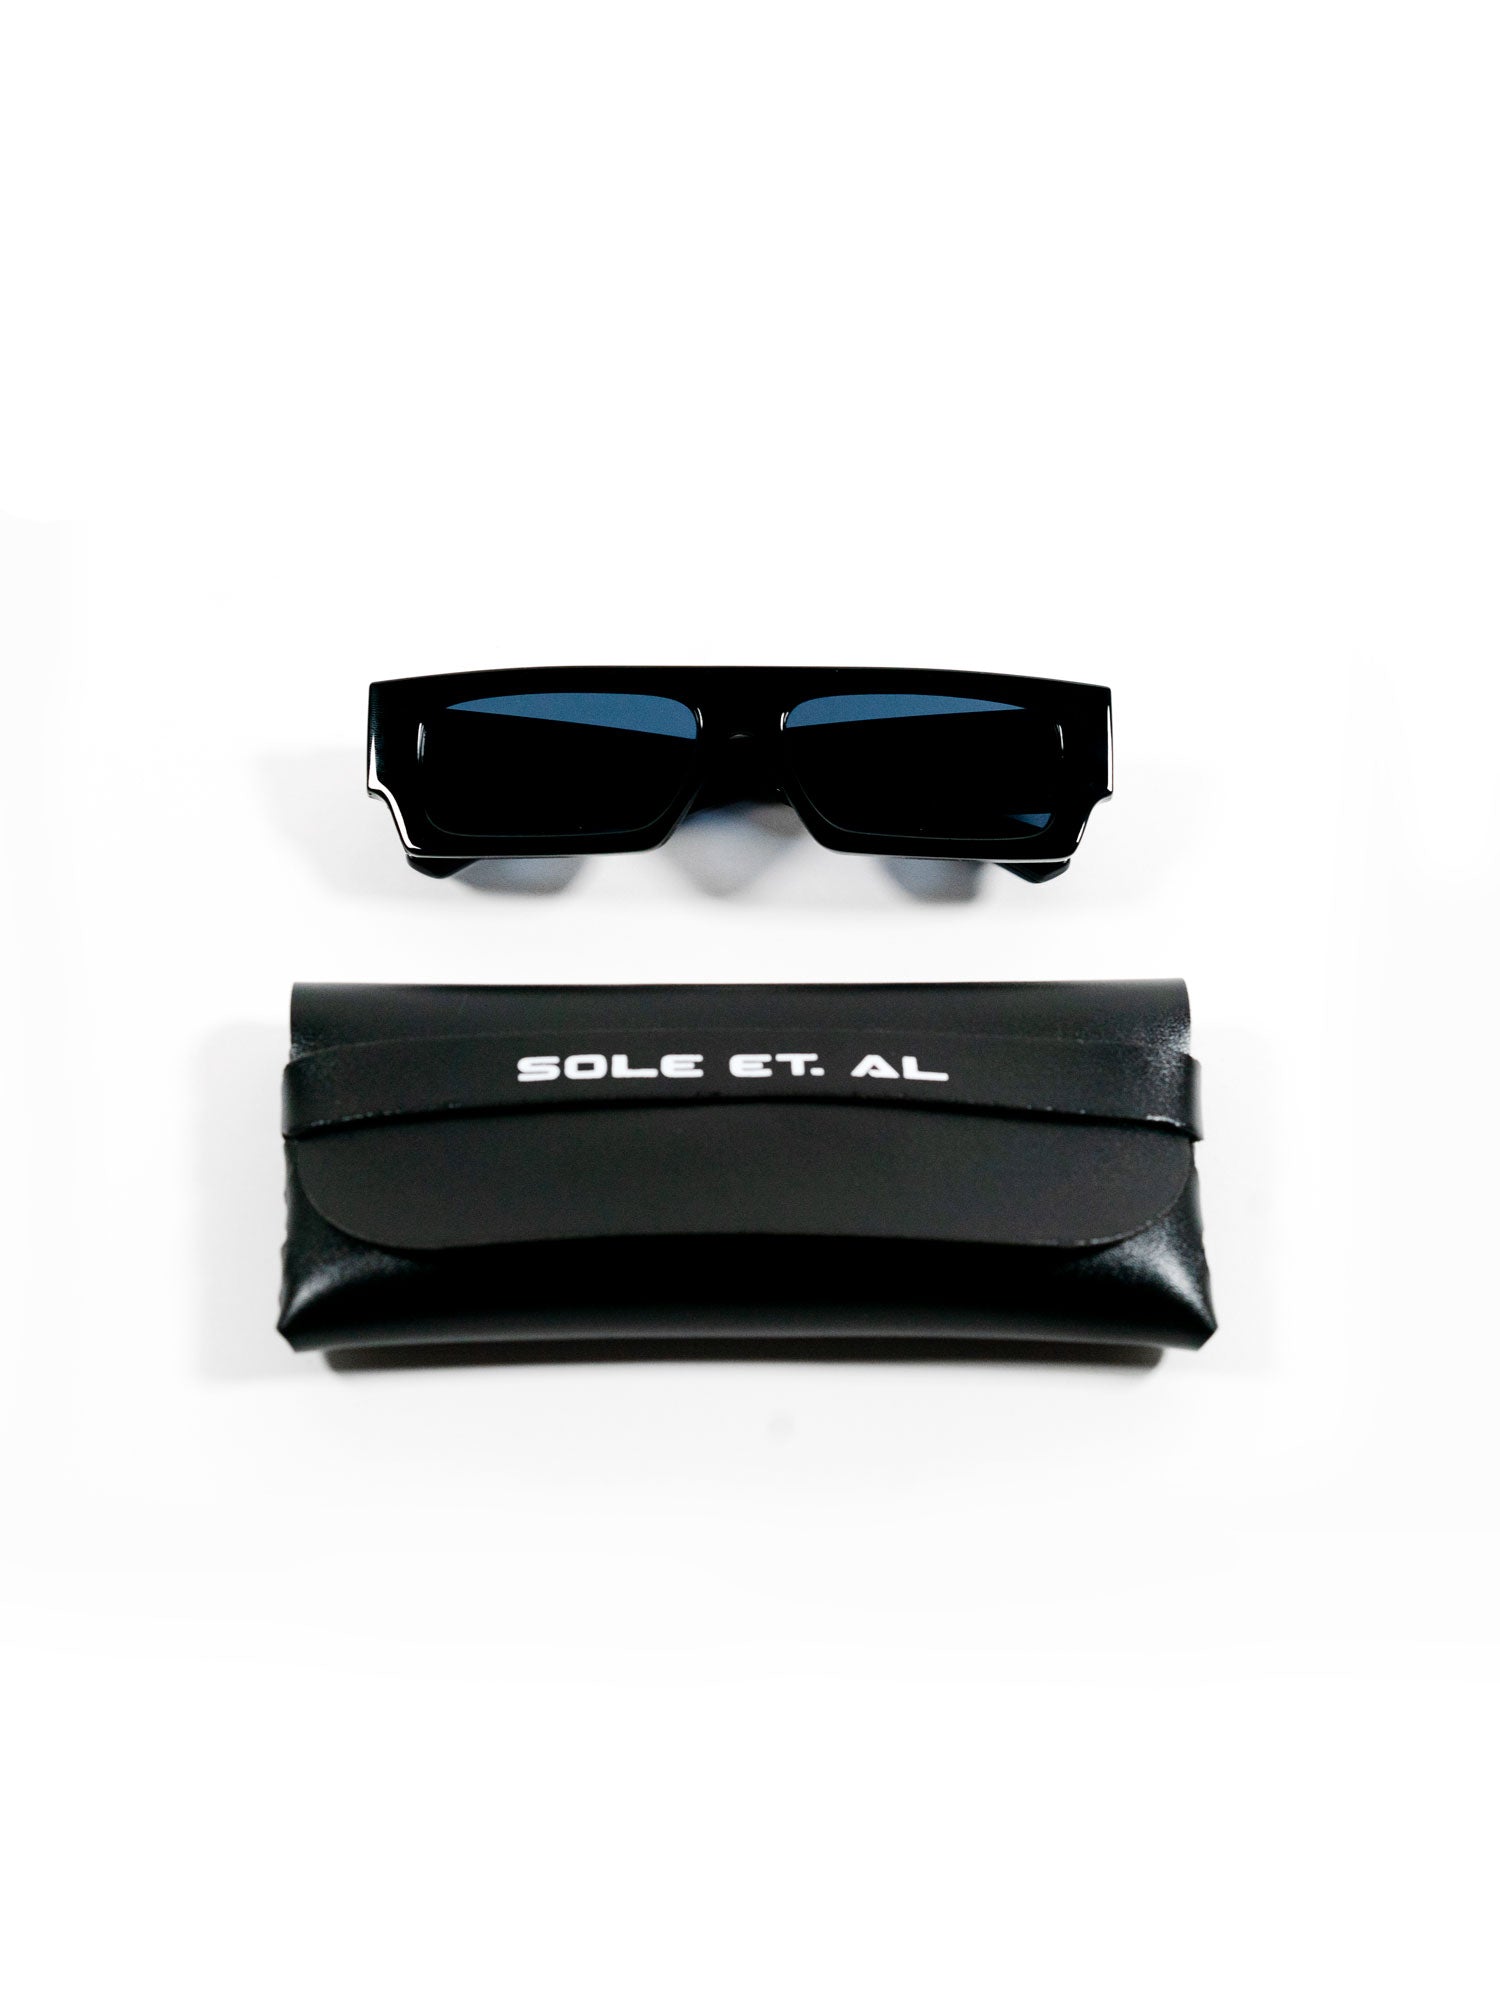 Sole et. Al Street-Blueprint Sunglasses